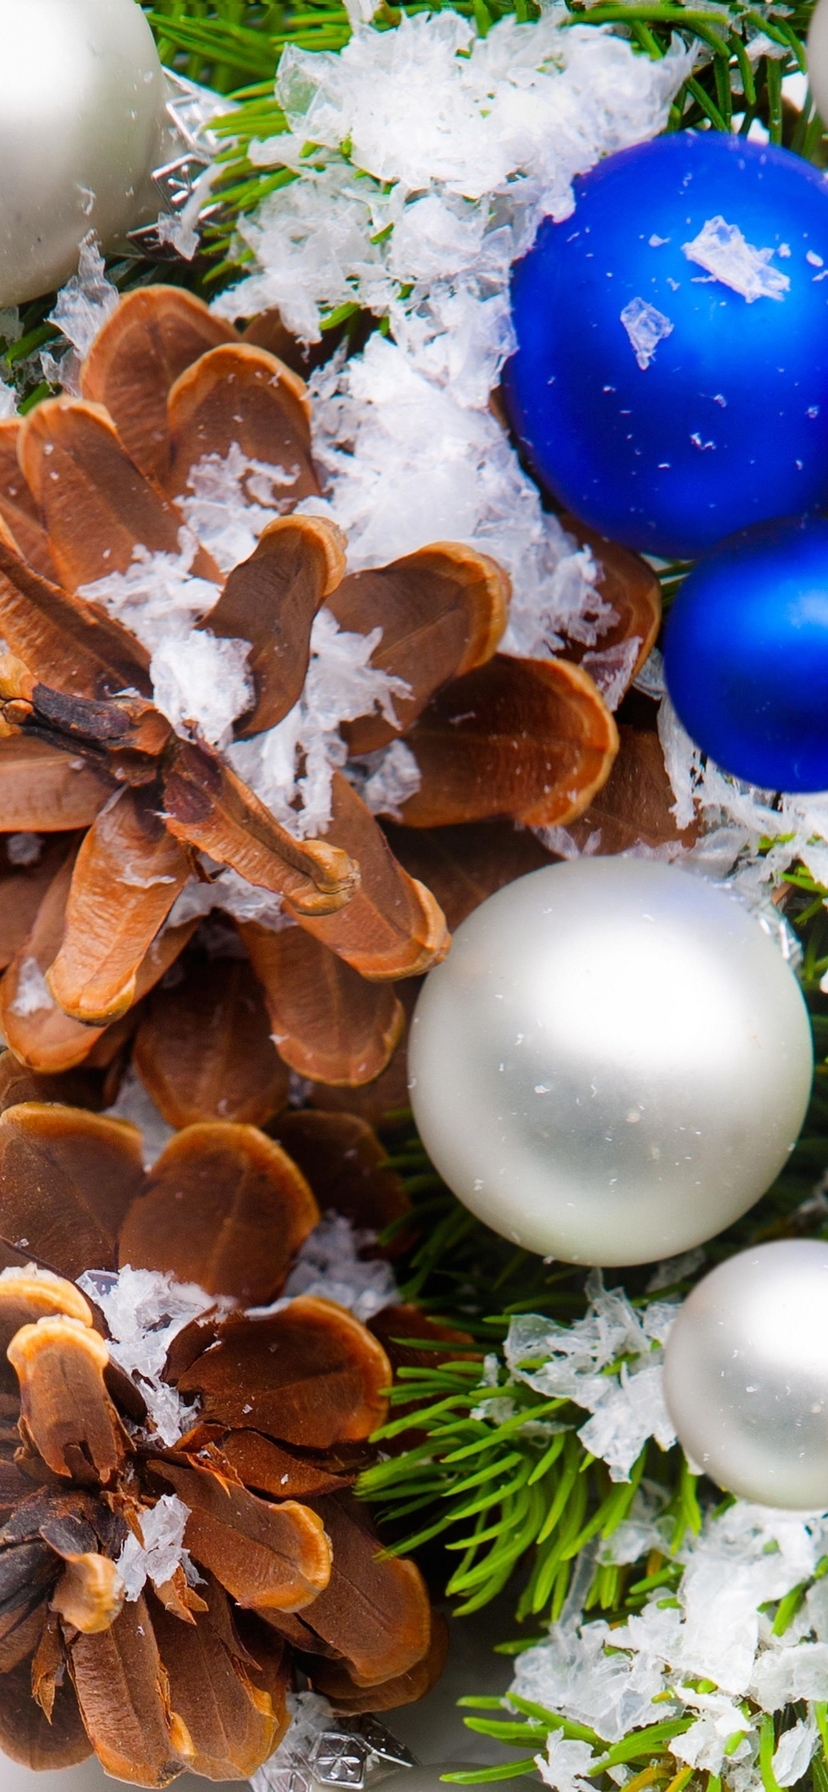 Картинка: Шишки, шары, Новый год, ветки, зима, декор